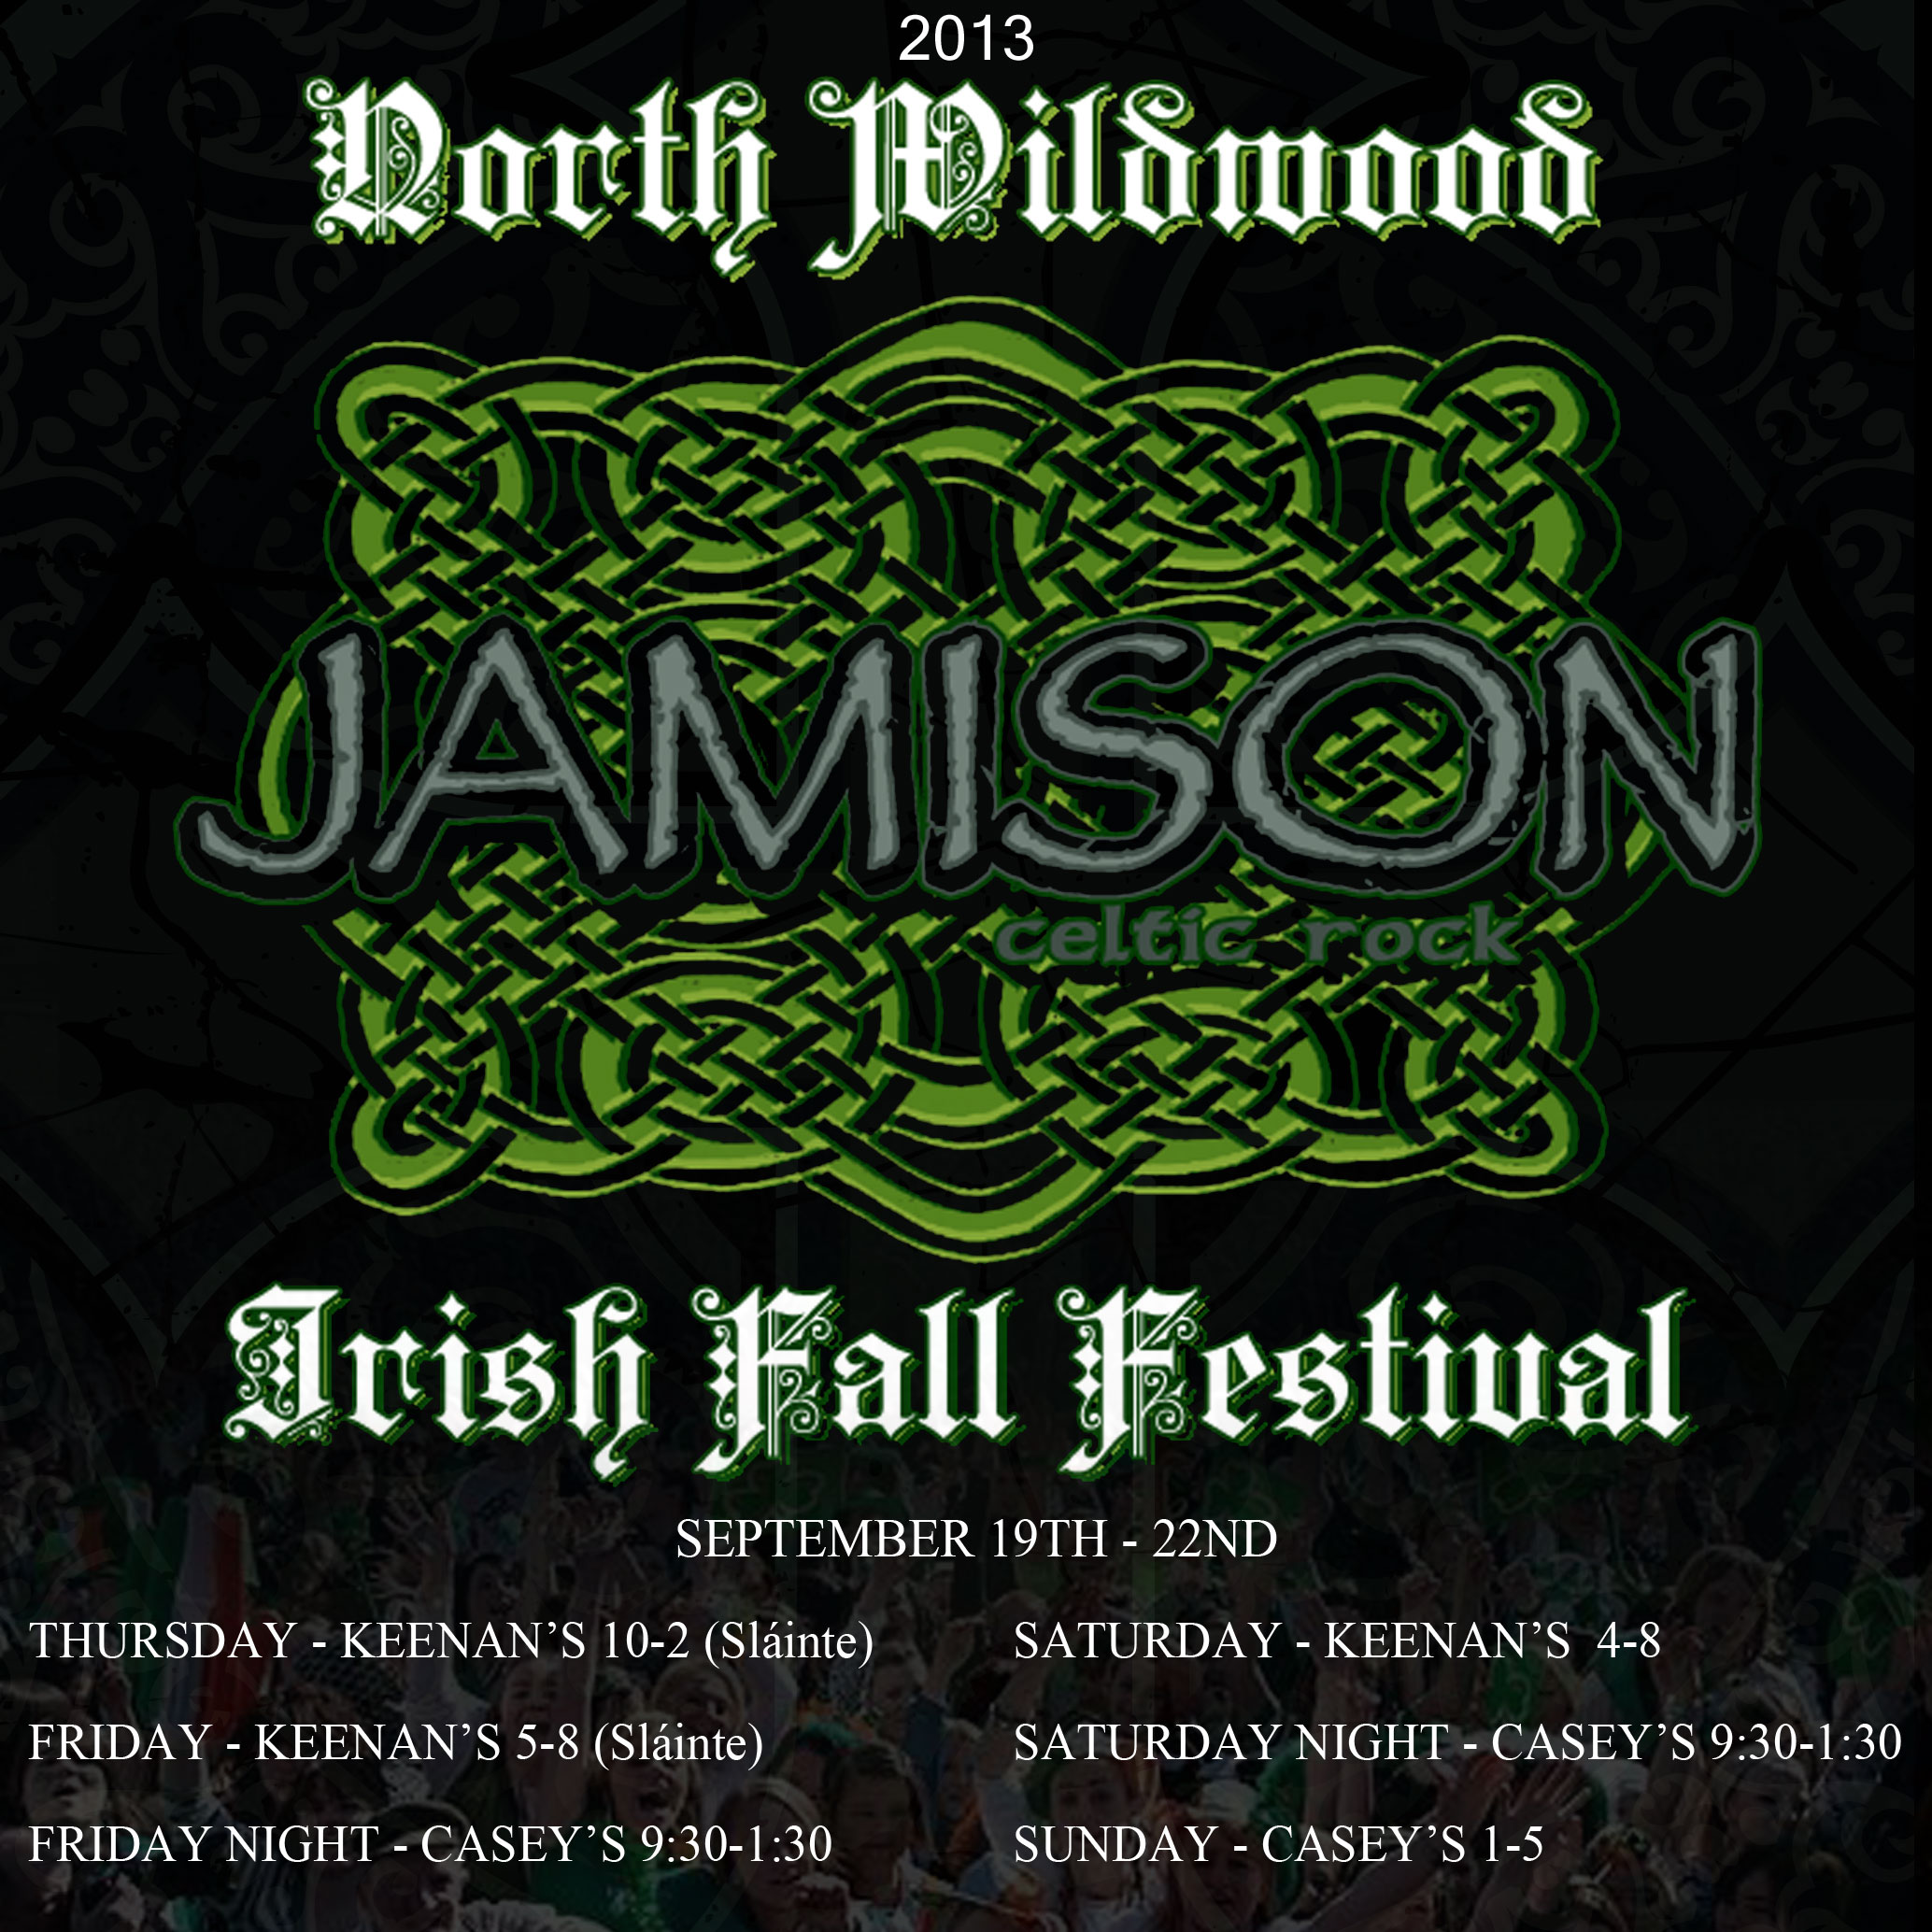 Irish-Weekend-2013